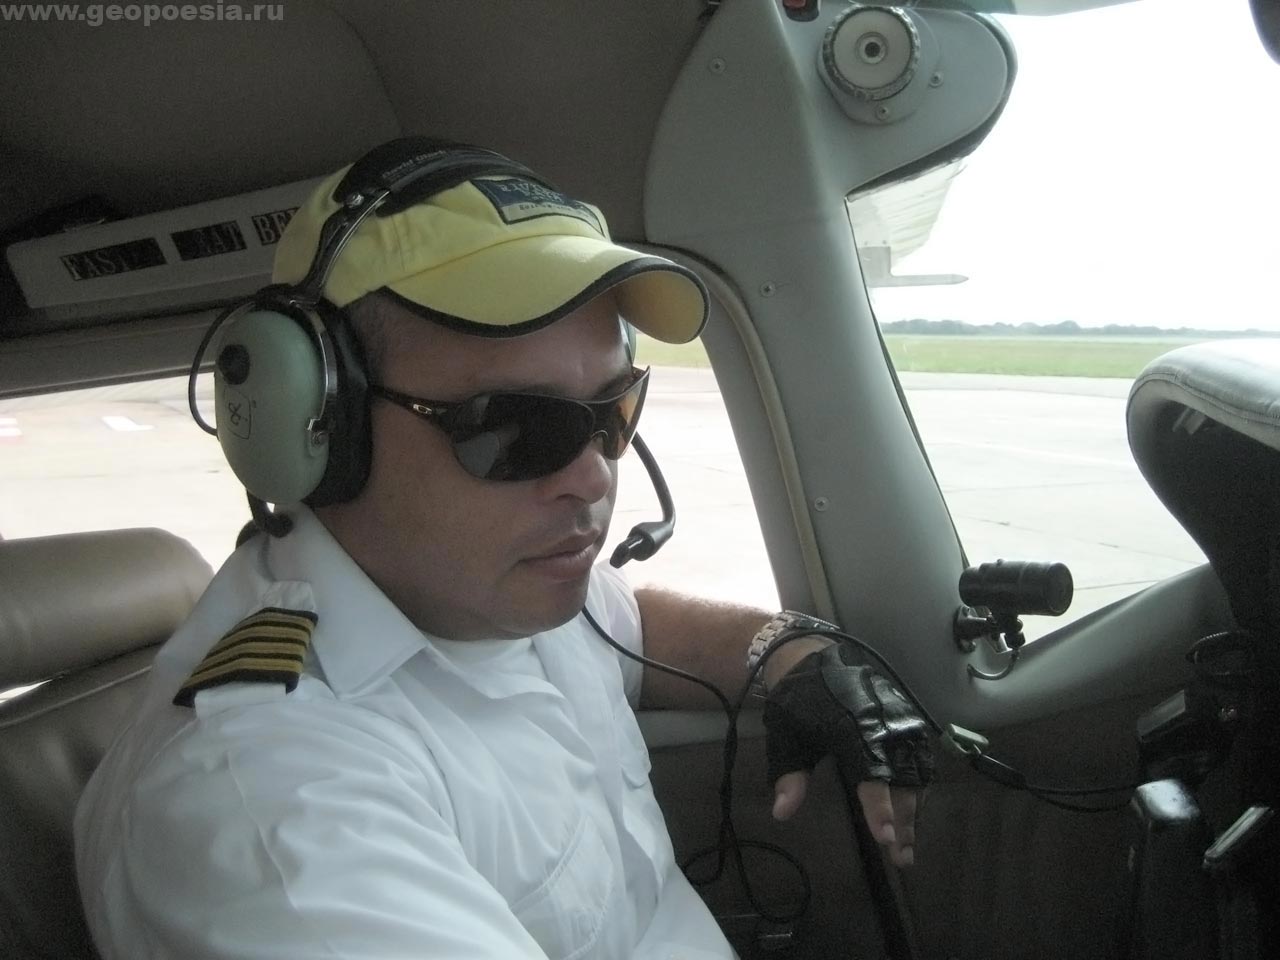 Фото венесуэльского пилота